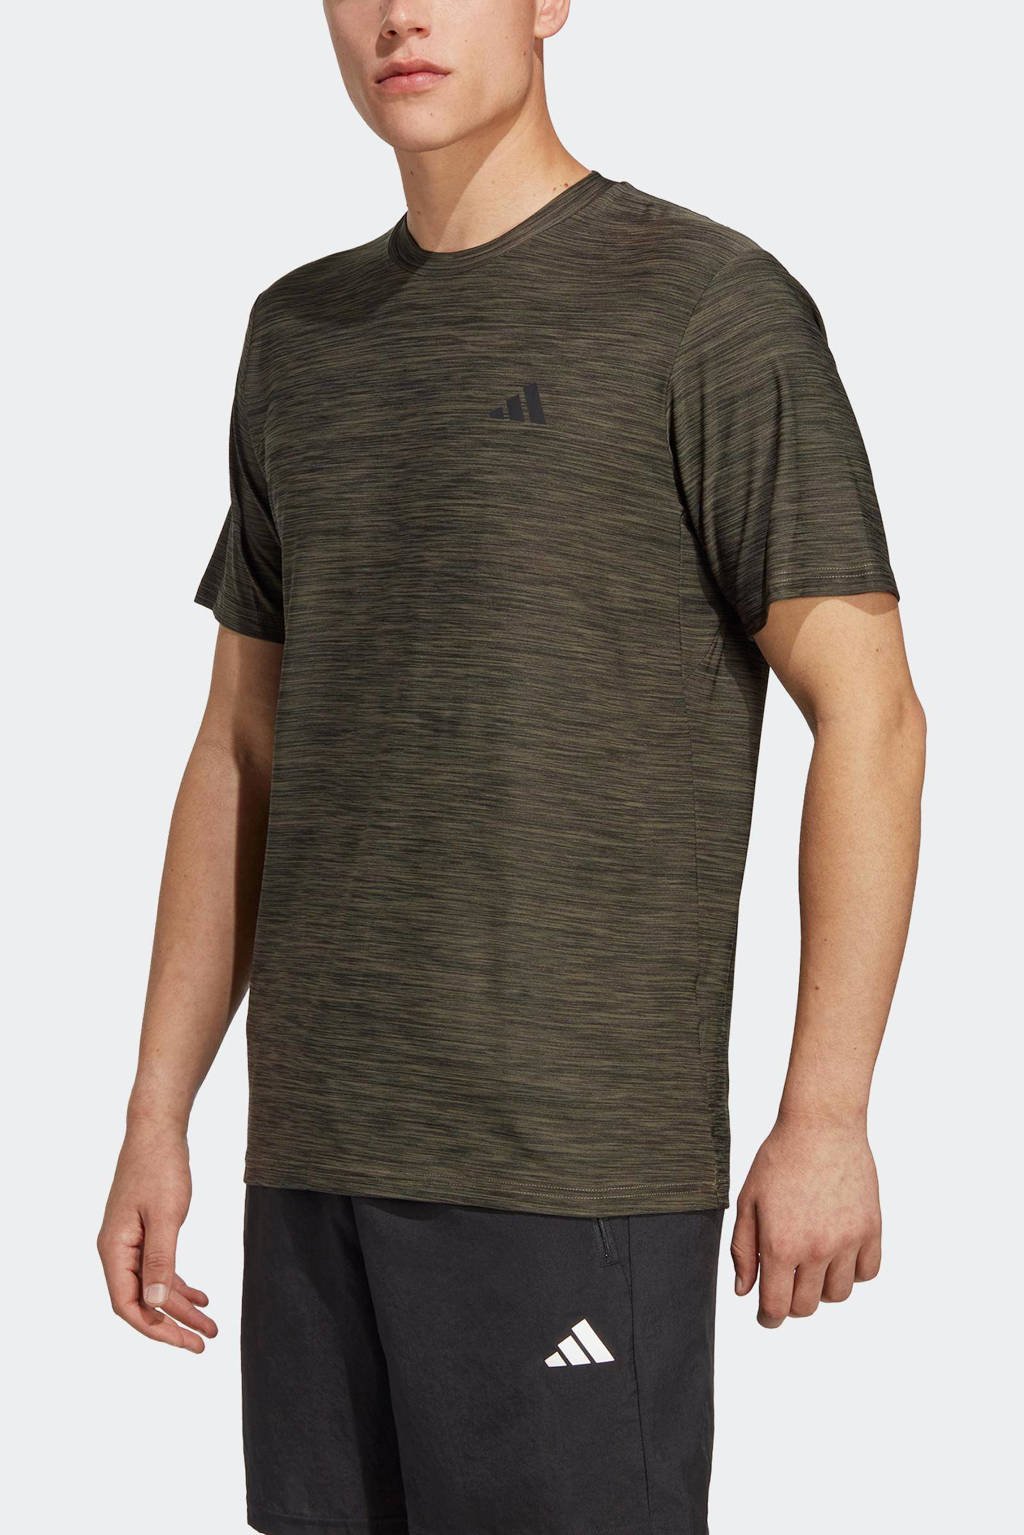 Licht Montgomery Schiereiland adidas Performance sport T-shirt olijfgroen | wehkamp